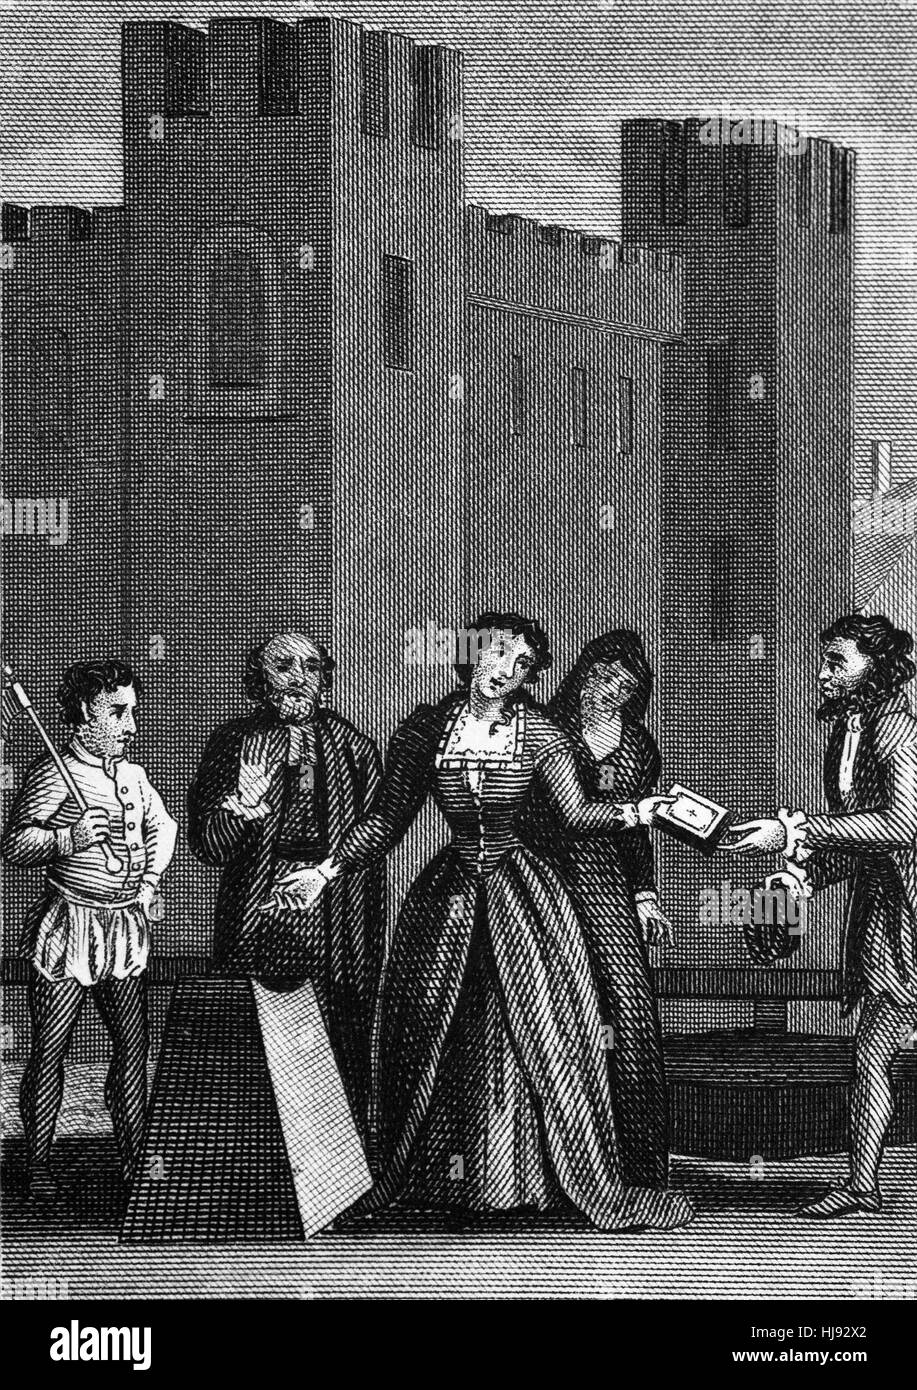 Lady Jane Grey (1536 – 1554), auch bekannt als die neun-Tage-Königin war eine englische Adlige und de-facto-Herrscher von England und Irland vom 10. Juli bis 19 Juli 1553. Einrichtung Loyalitäten wechselte Maria ich (1516 – 1558), Königin von England wurde.  Nach Marys Beitritt Lady Jane Grey wurde beschuldigt, des Verrats und am Morgen des 12 Februar 1554, wurde getroffen, um Turm grün, im Inneren des Turmes geköpft werden. Stockfoto